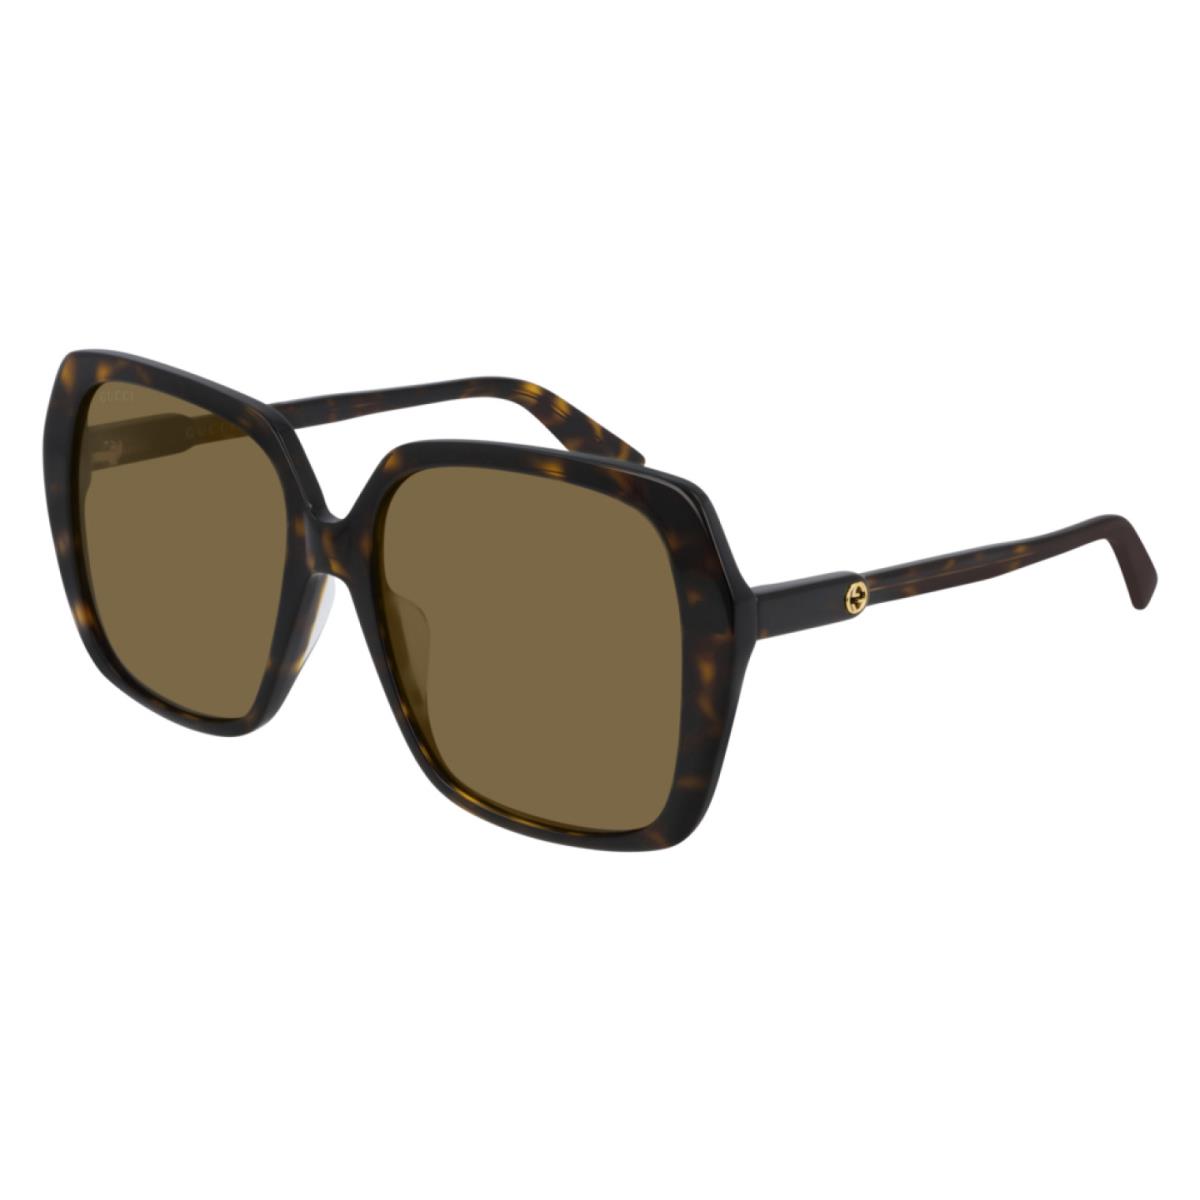 Gucci GG0533SA Fashion Square Sunglasses 56mm 002 Brown Havana